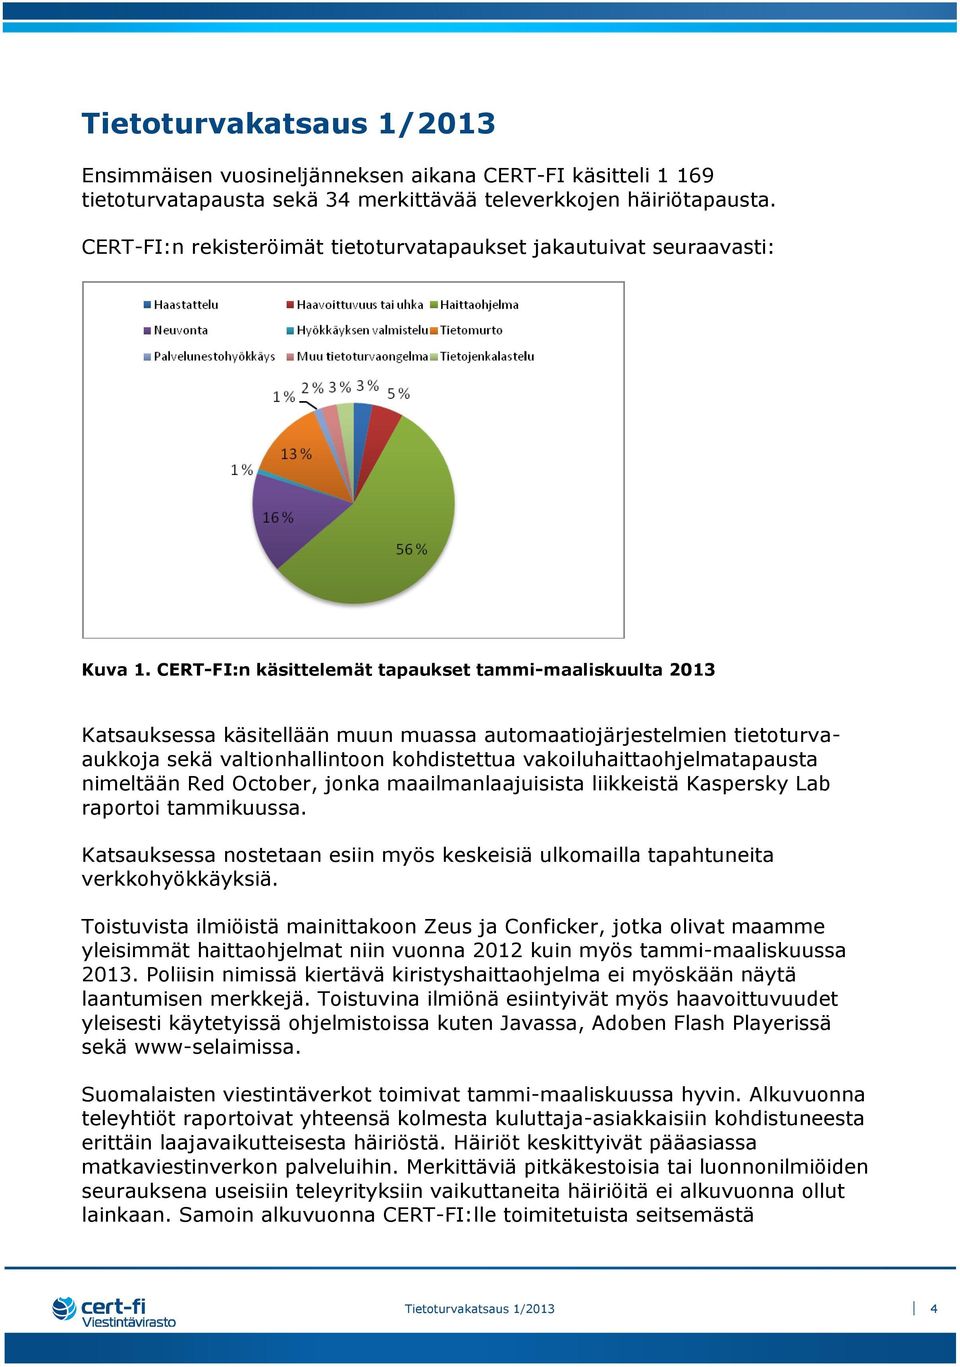 CERT-FI:n käsittelemät tapaukset tammi-maaliskuulta 2013 Katsauksessa käsitellään muun muassa automaatiojärjestelmien tietoturvaaukkoja sekä valtionhallintoon kohdistettua